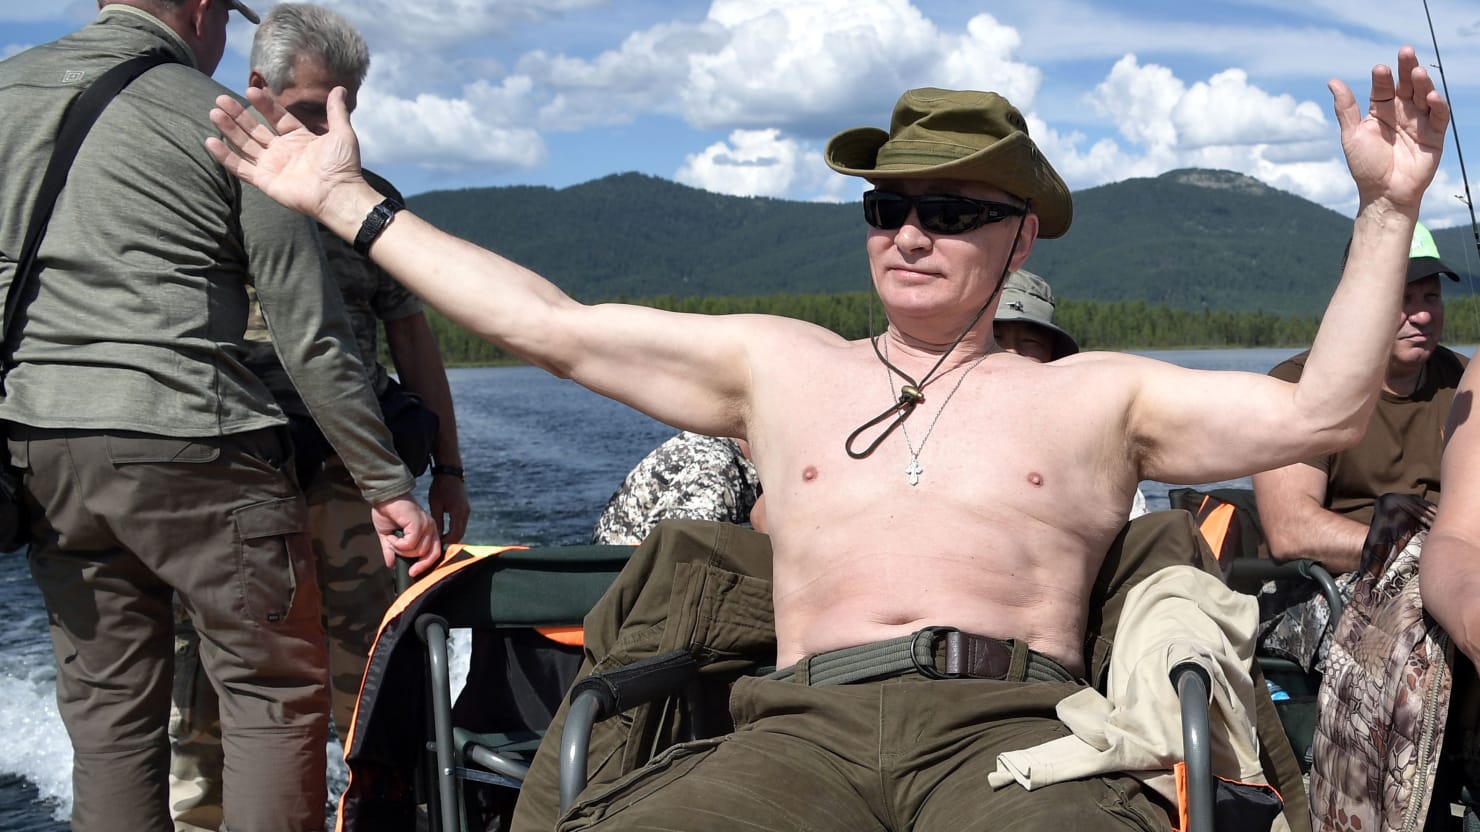 Putin se jacta de que otros líderes mundiales se ven “asquerosos” completamente desnudos, no están calientes como él